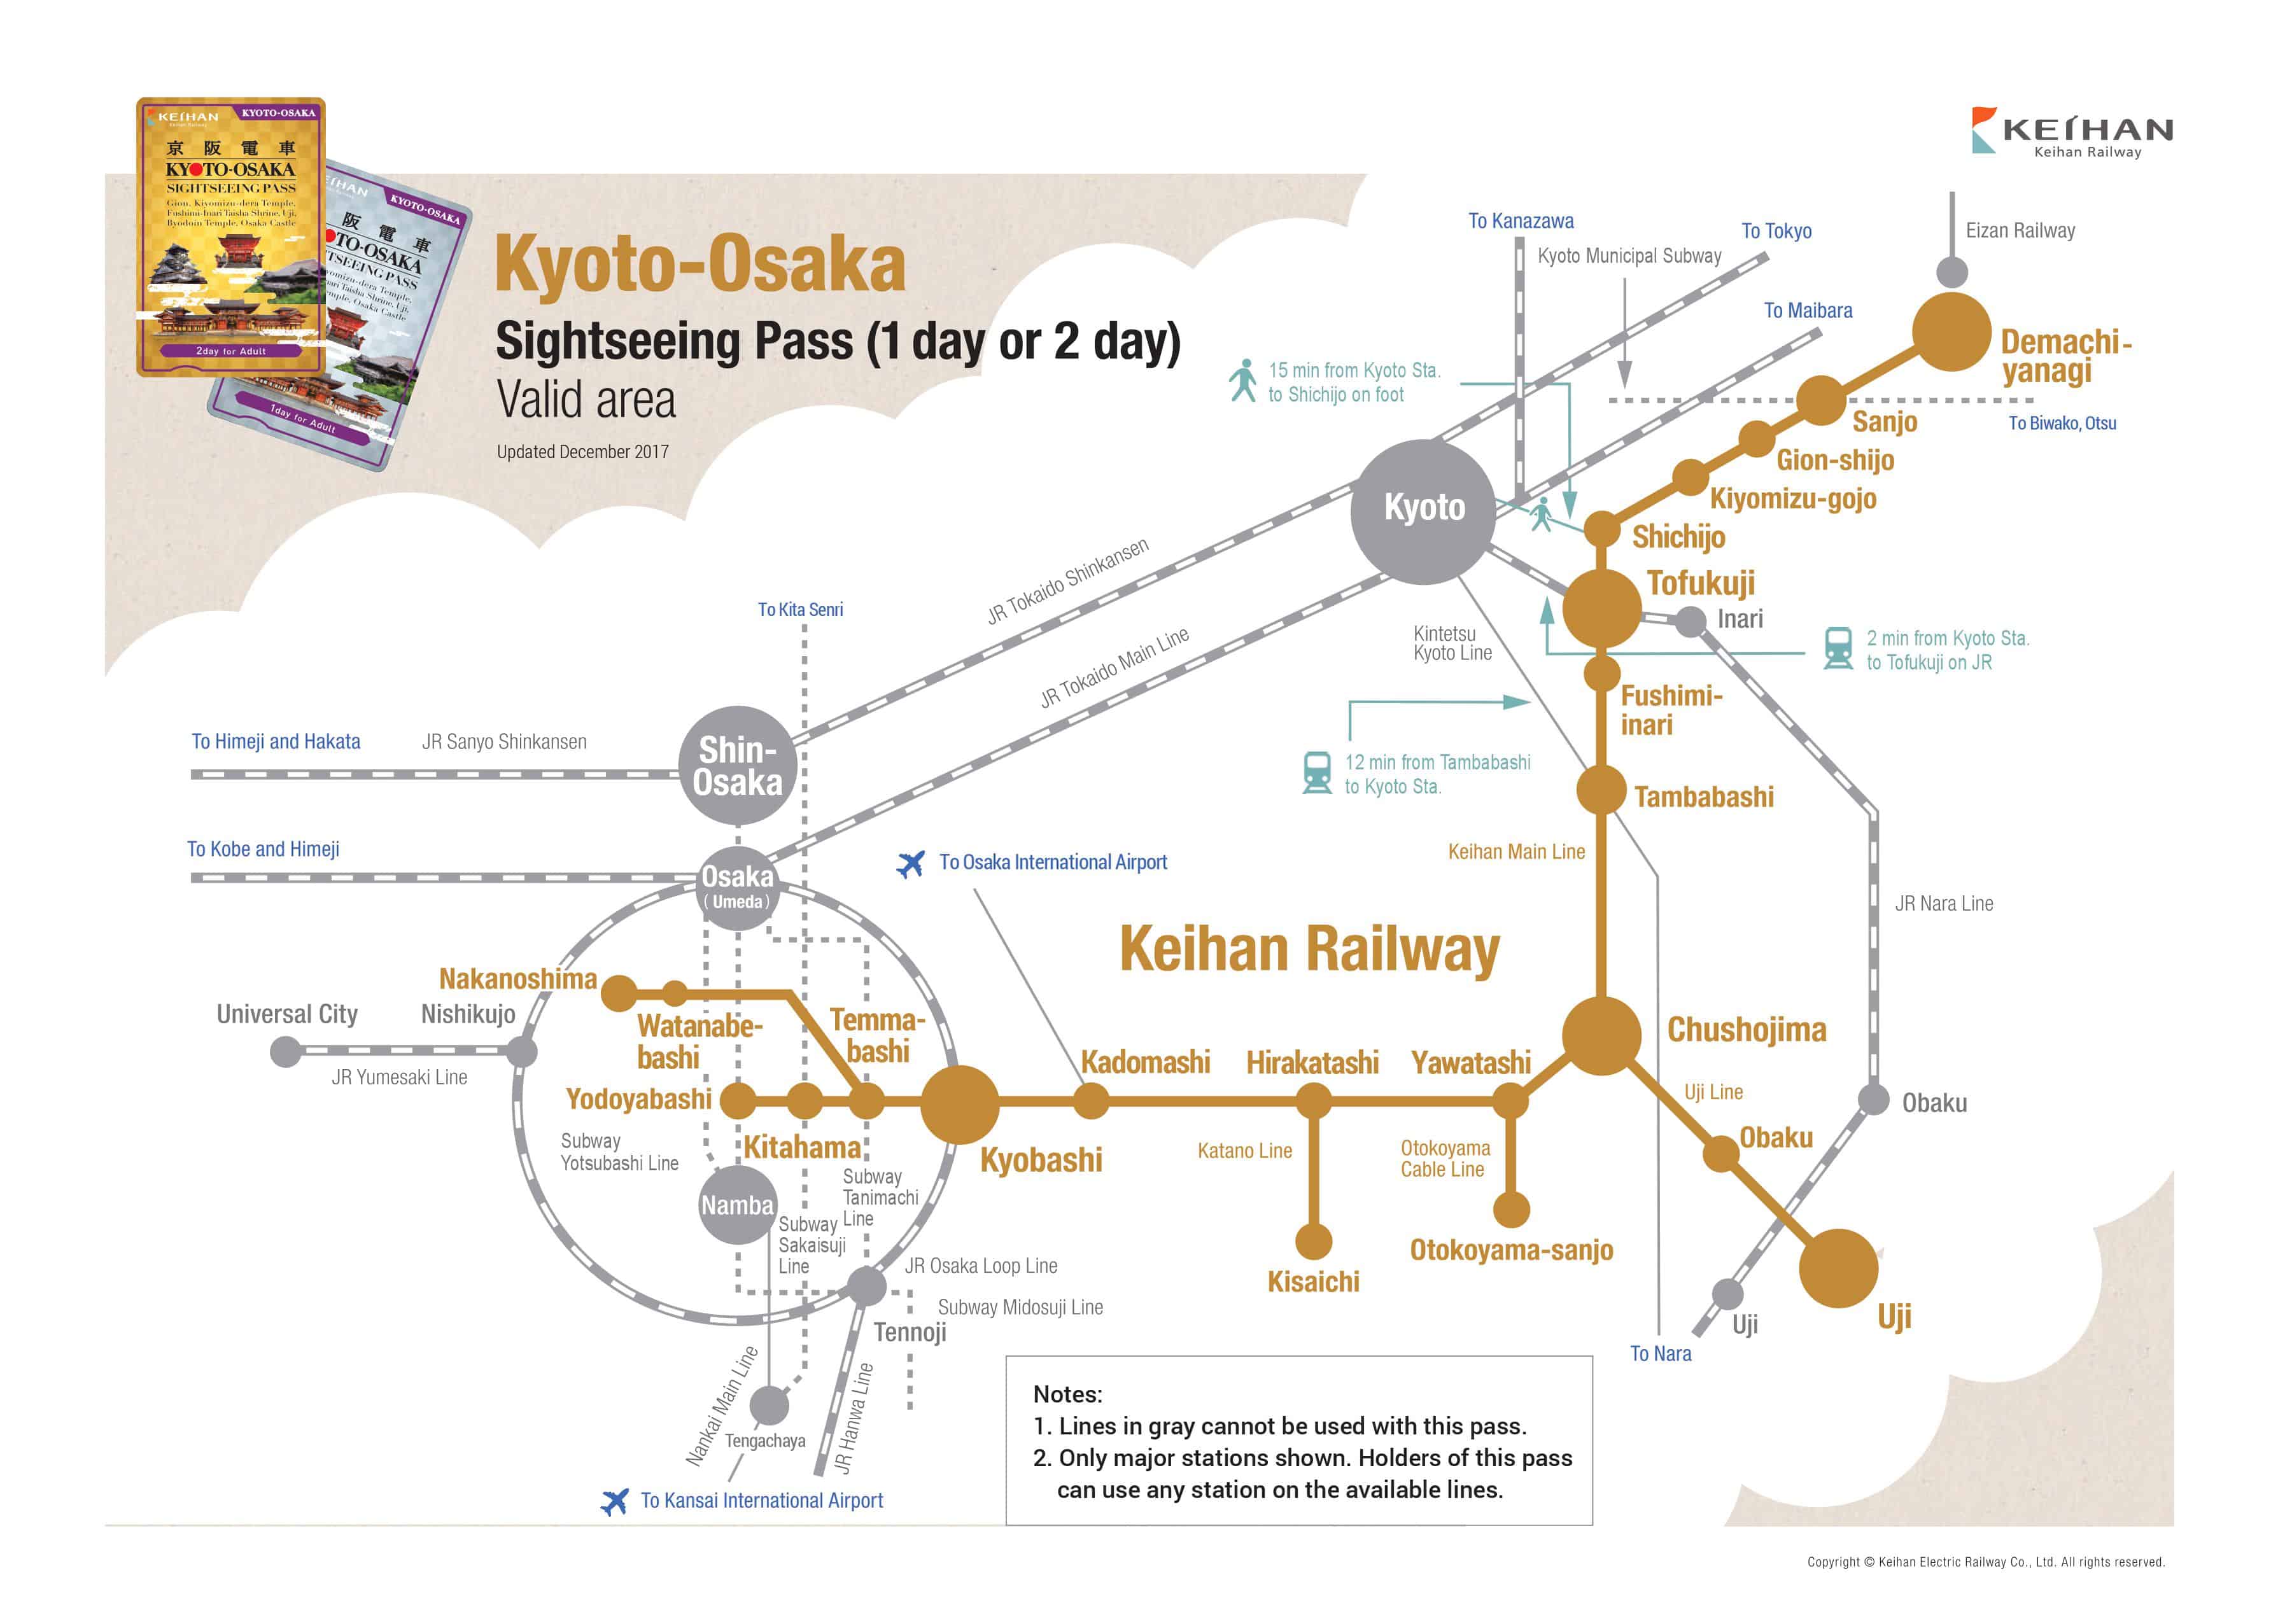 สถานีที่สามารถใช้  Sightseeing Pass 1 day (Kyoto-Osaka) ได้